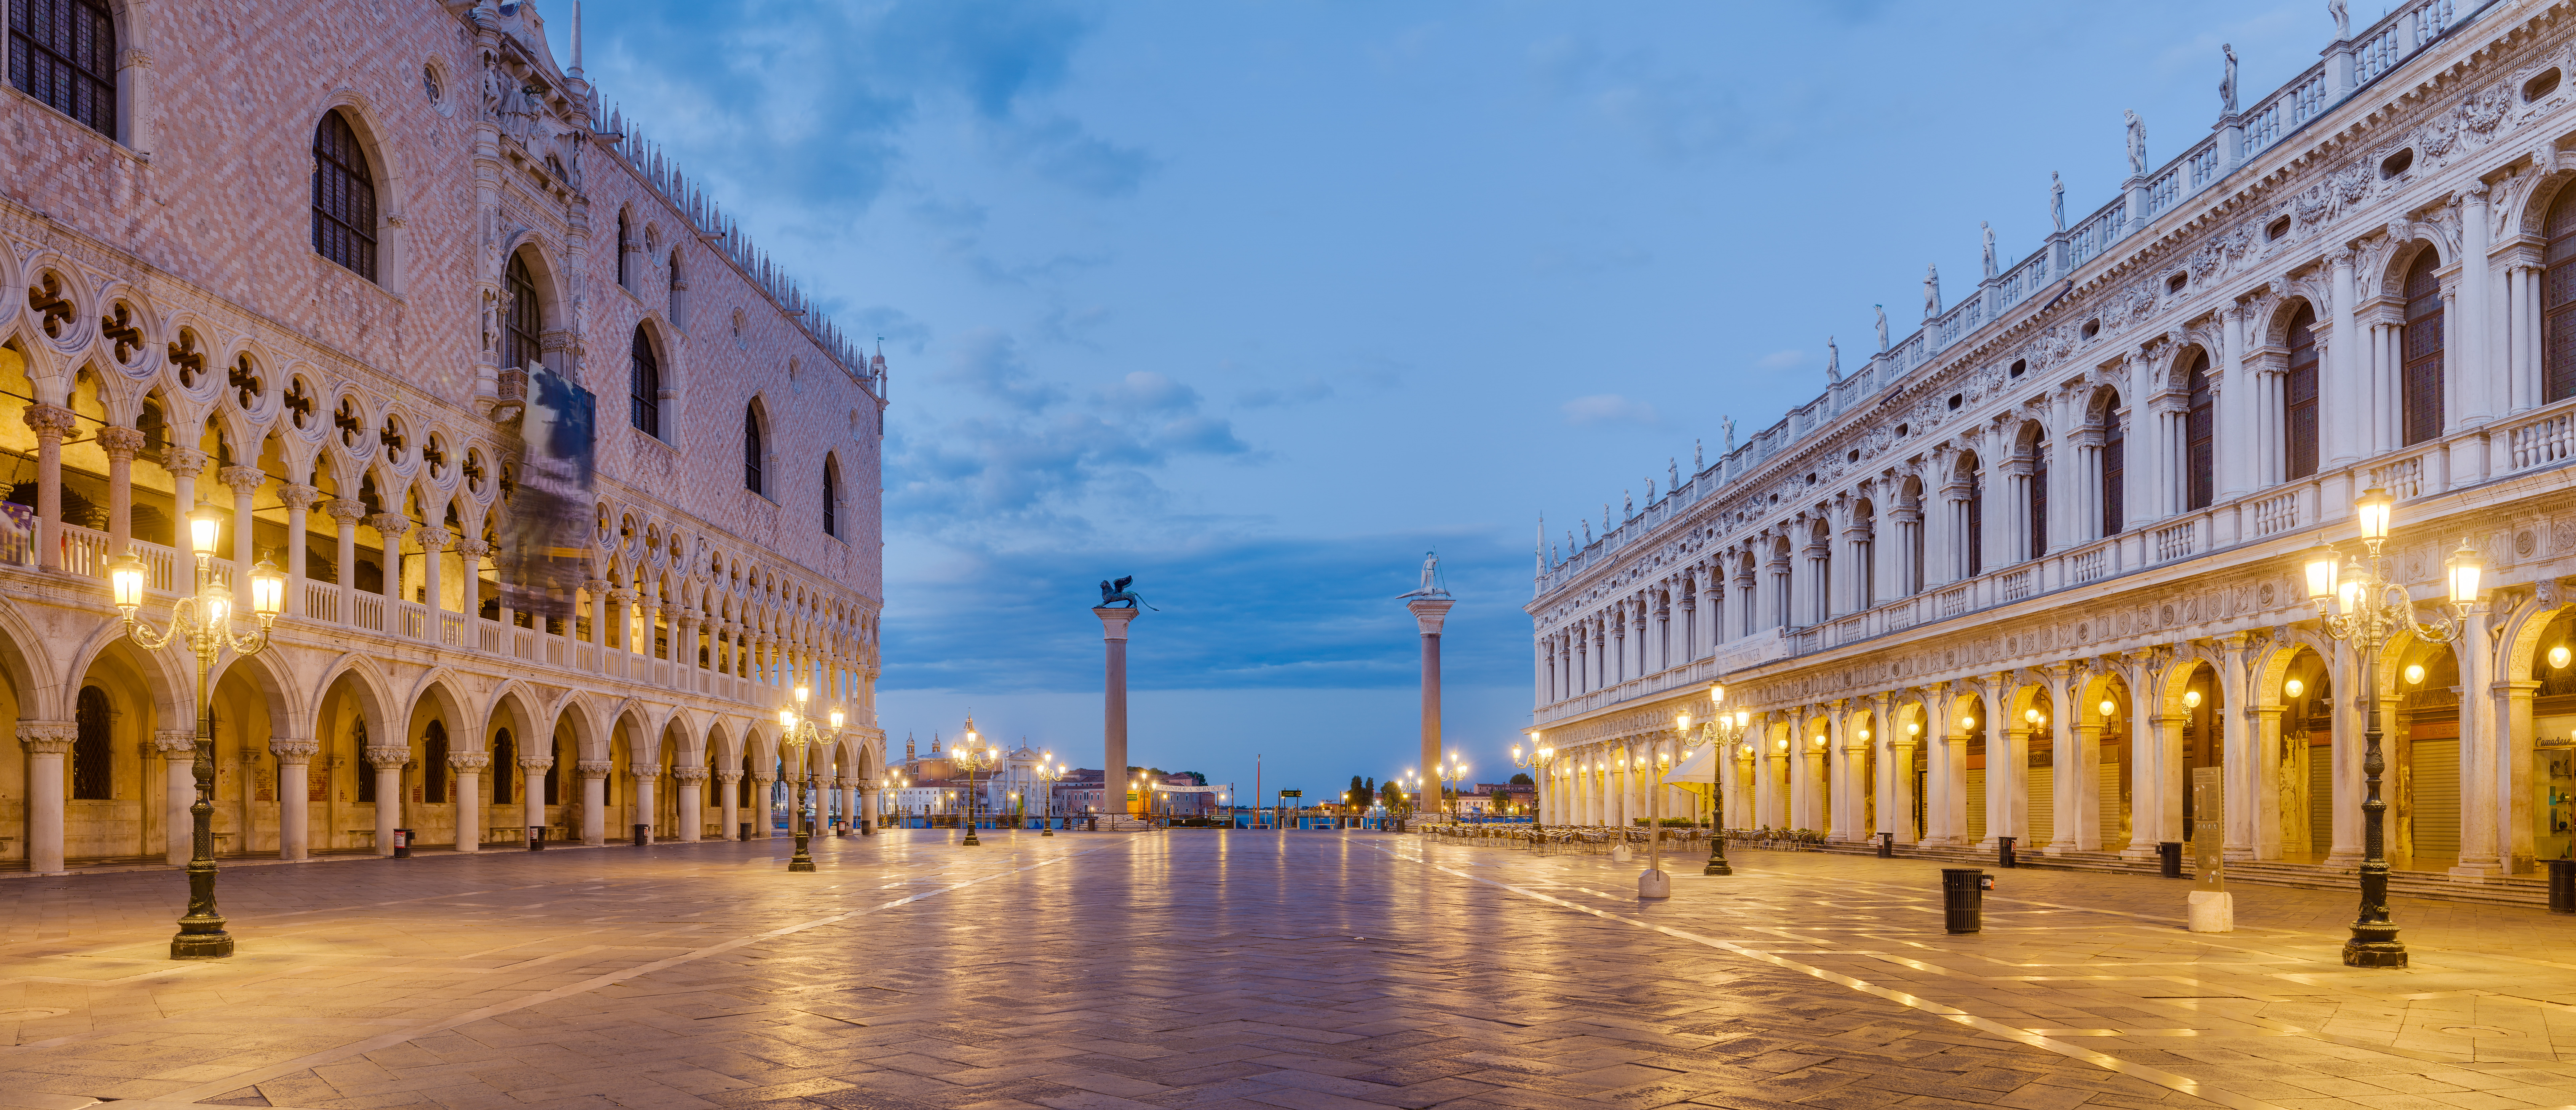 Quảng trường Thánh Marco - St. Marco Square - Venice - Ý